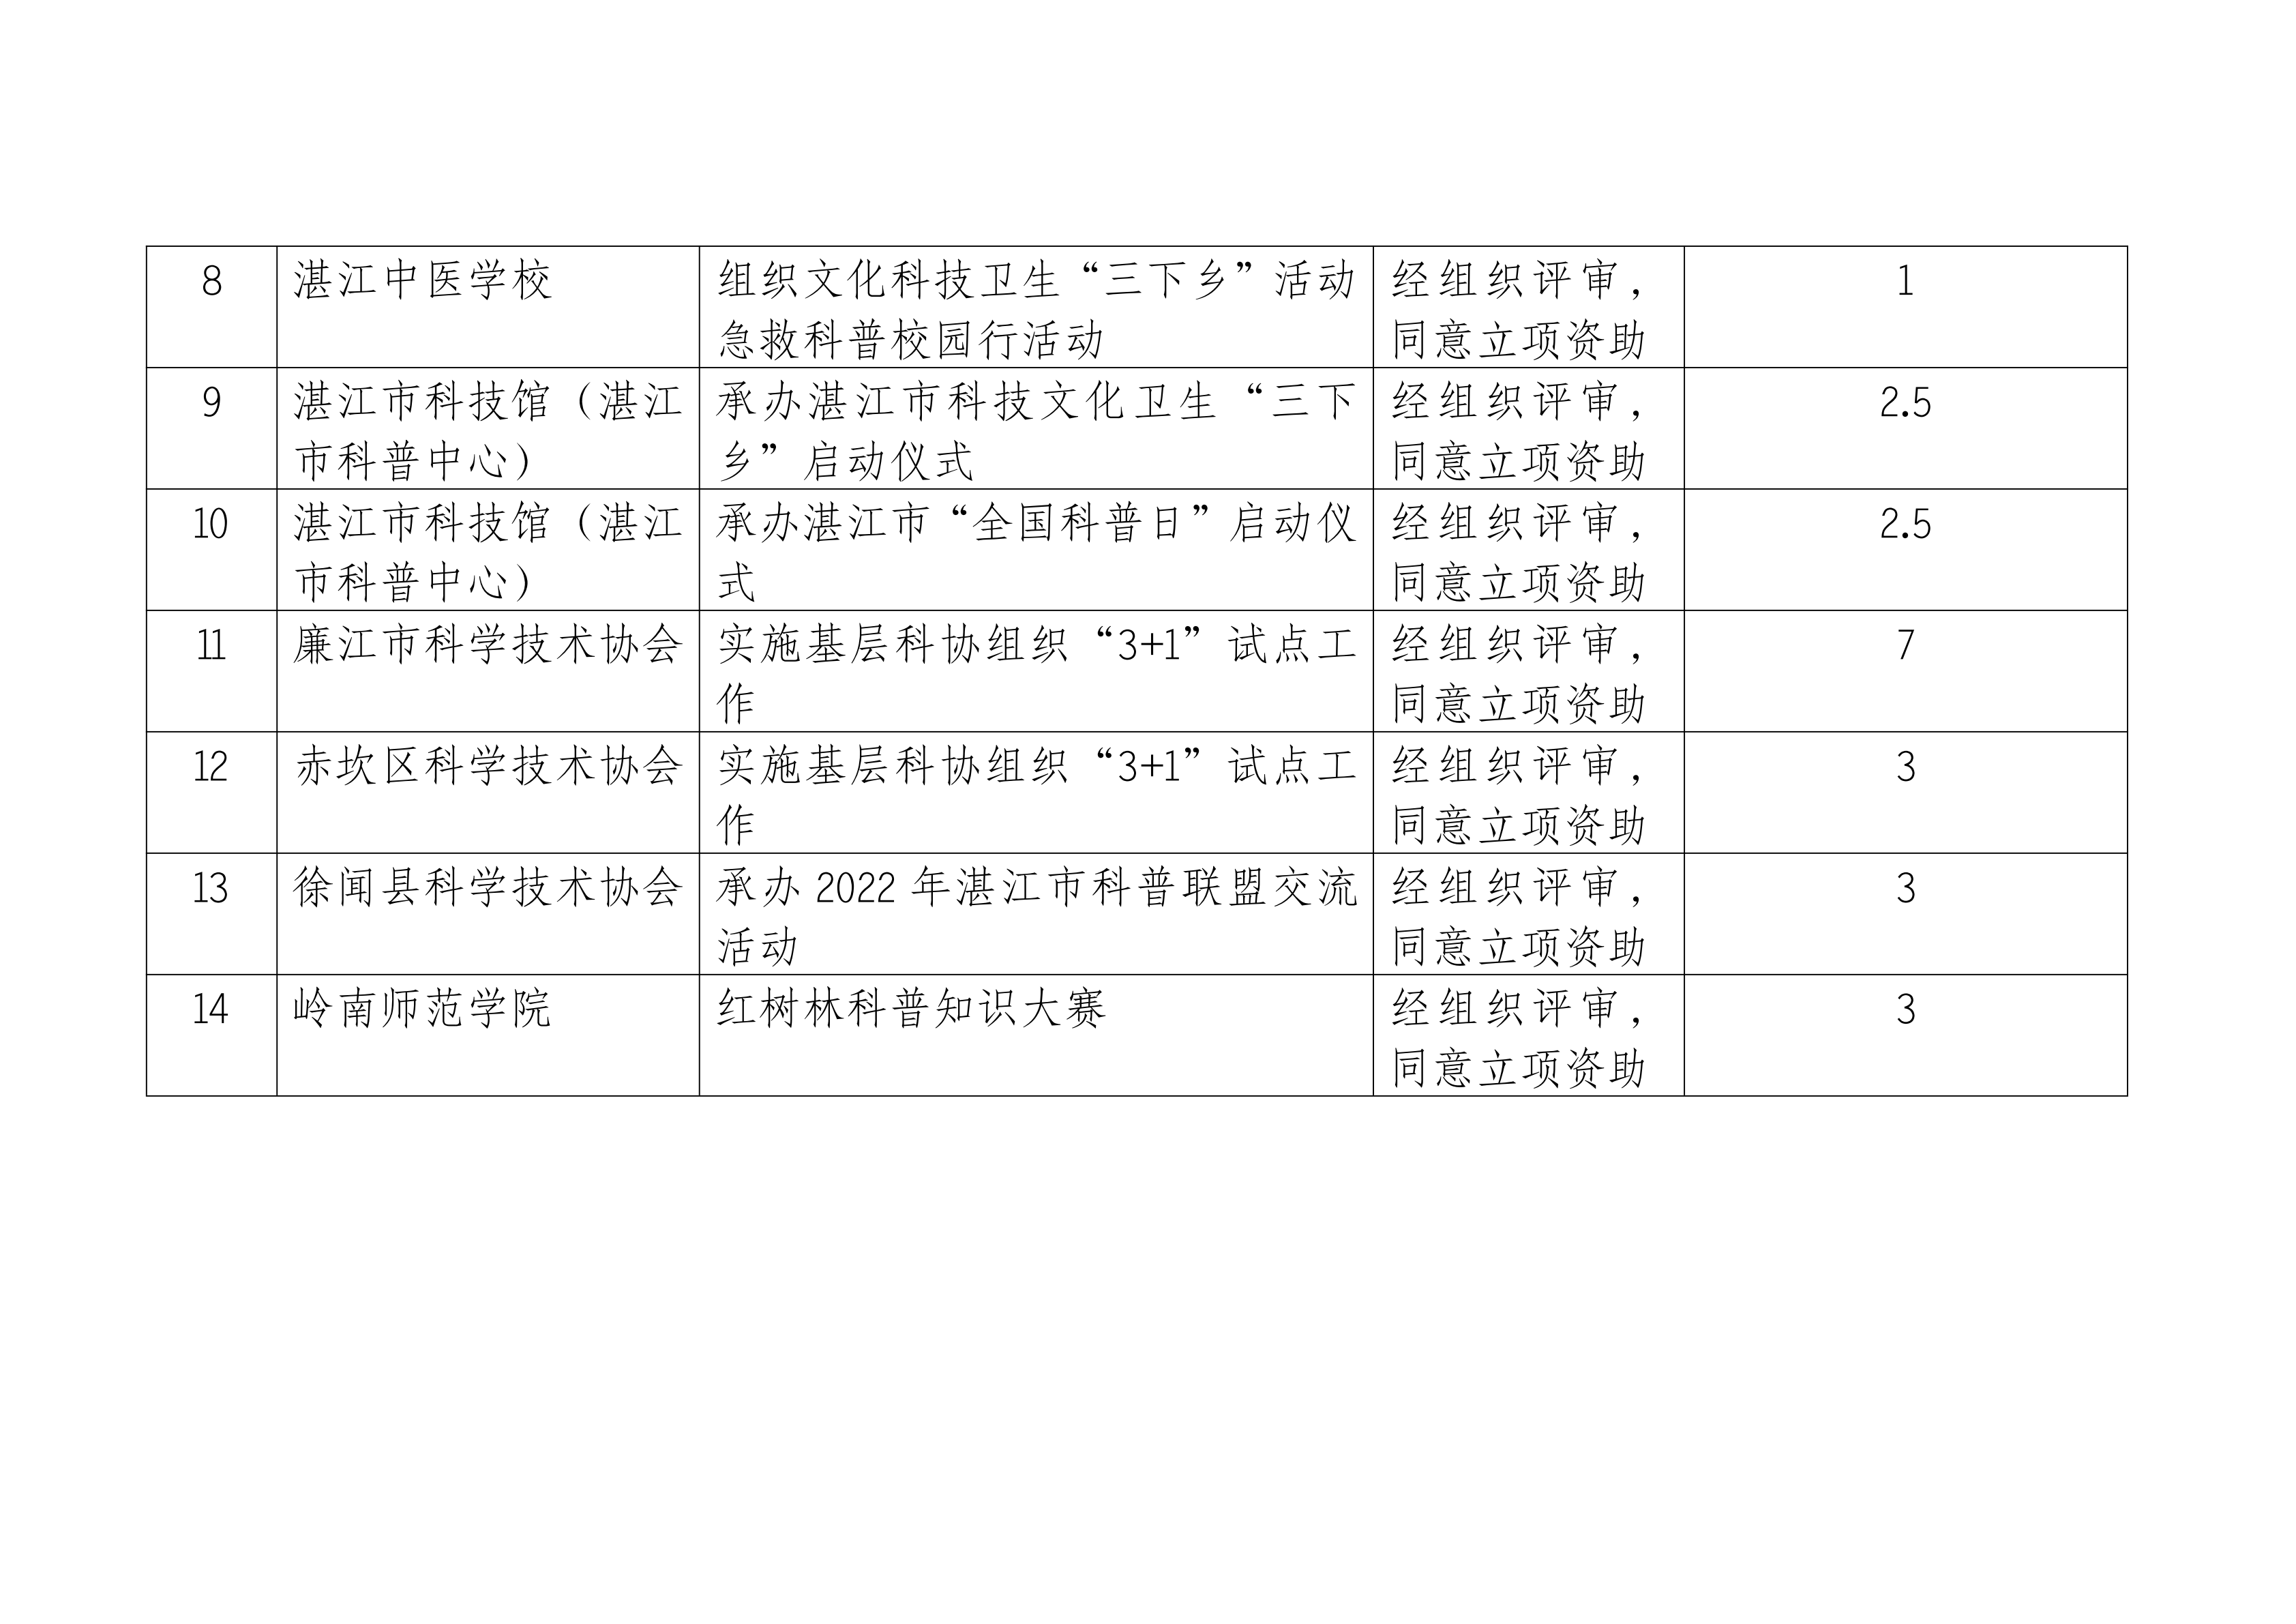 2022年湛江市科普经费活动项目申报评审结果公示表（第一）_01.png